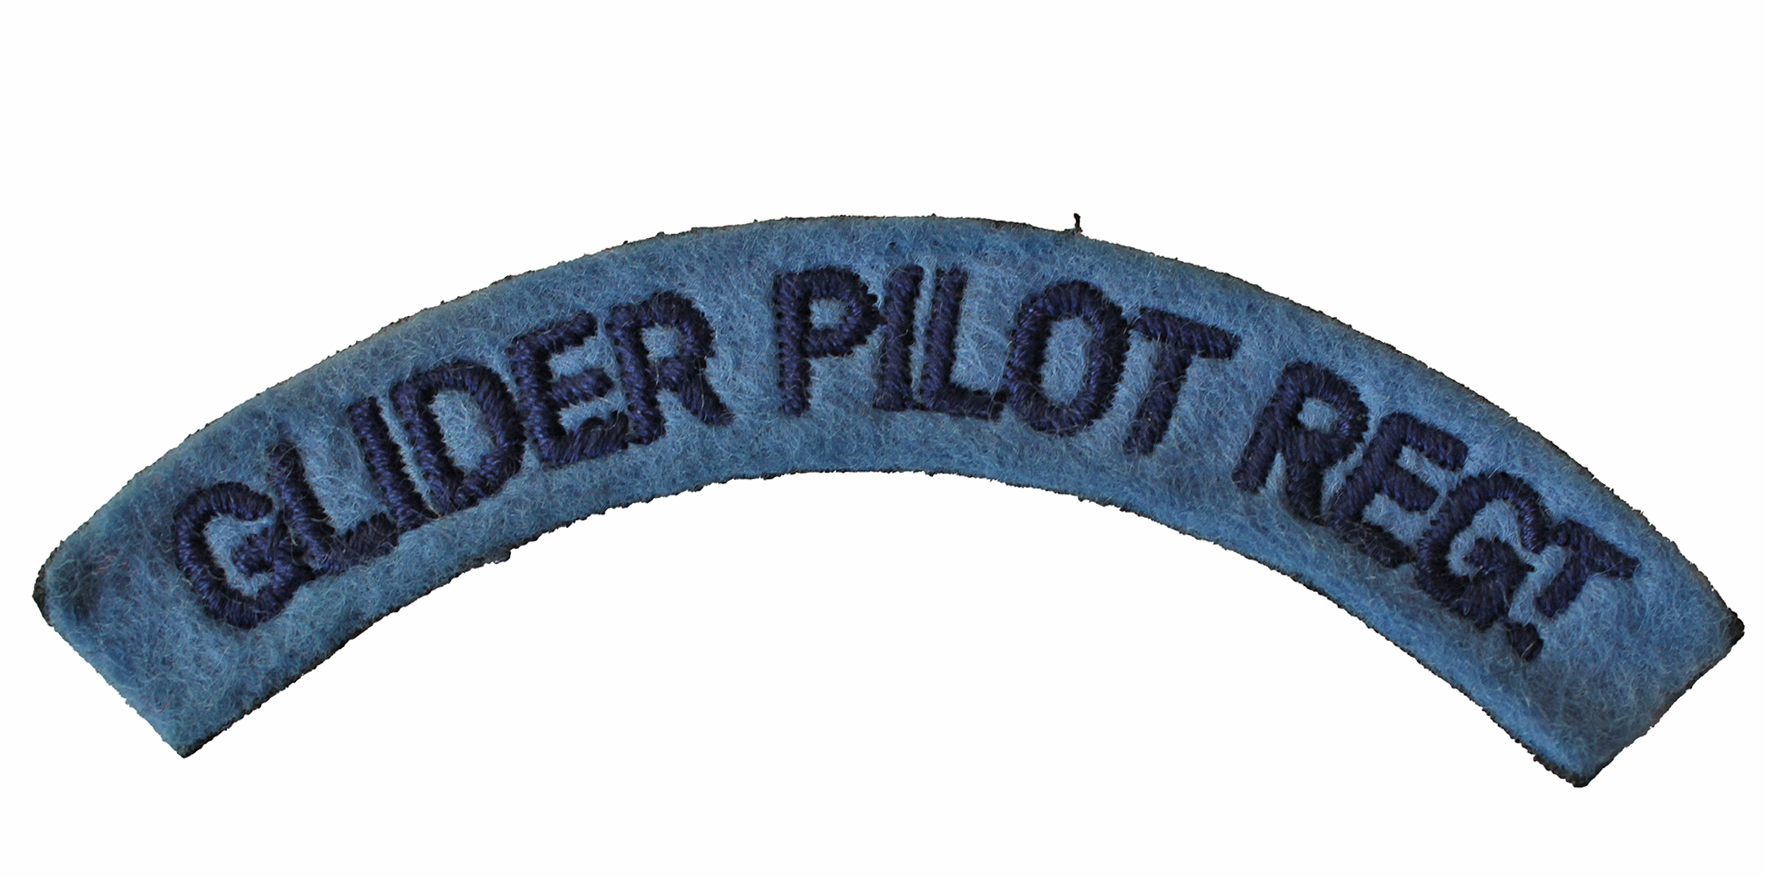 ORIGINAL WW2 BRITISH AIRBORNE EMBROIDERED GLIDER PILOT REGIMENT CLOTH SHOULDER TITLE